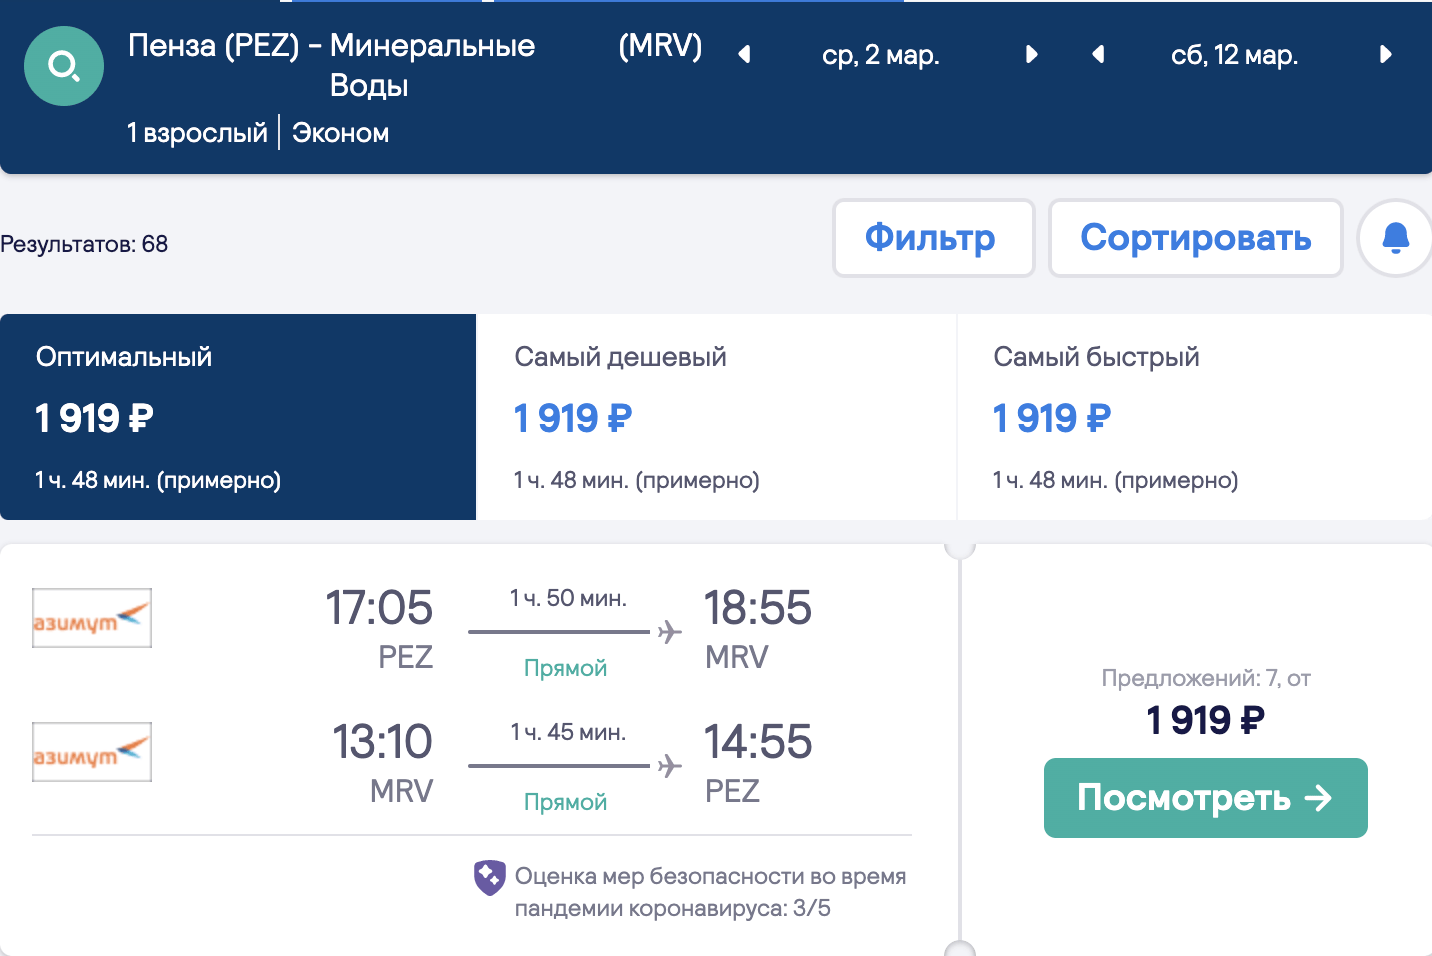 Ett stort urval av billiga flyg från regioner till Krasnodar och Minvody från 1800₽ tur och retur